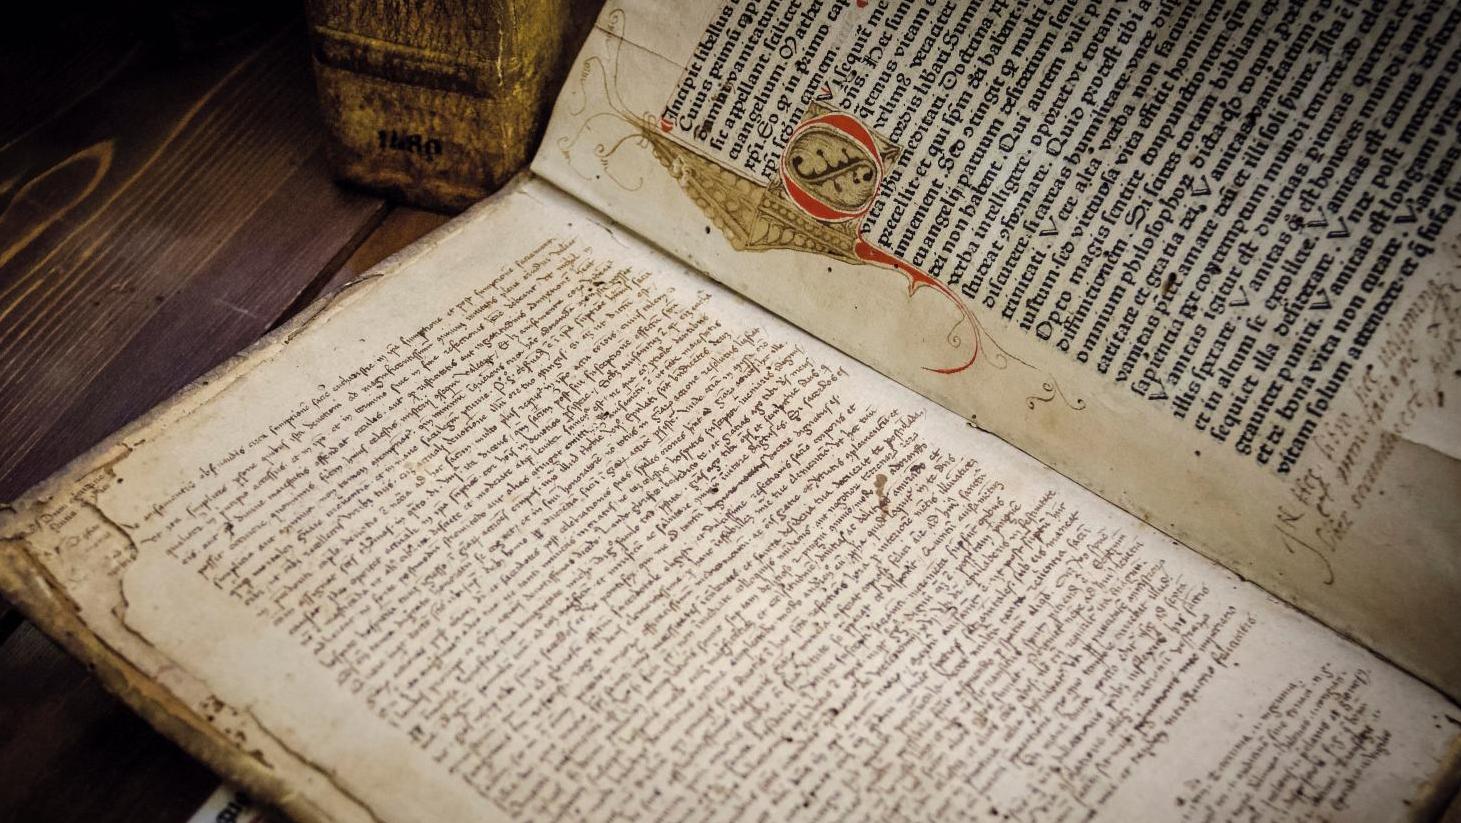 Une édition de 1472 de l’Imitatio Christi, de Thomas A. Kempis (vers 1380-vers 1471),... Le marché du livre ancien italien tourne la page d’années difficiles